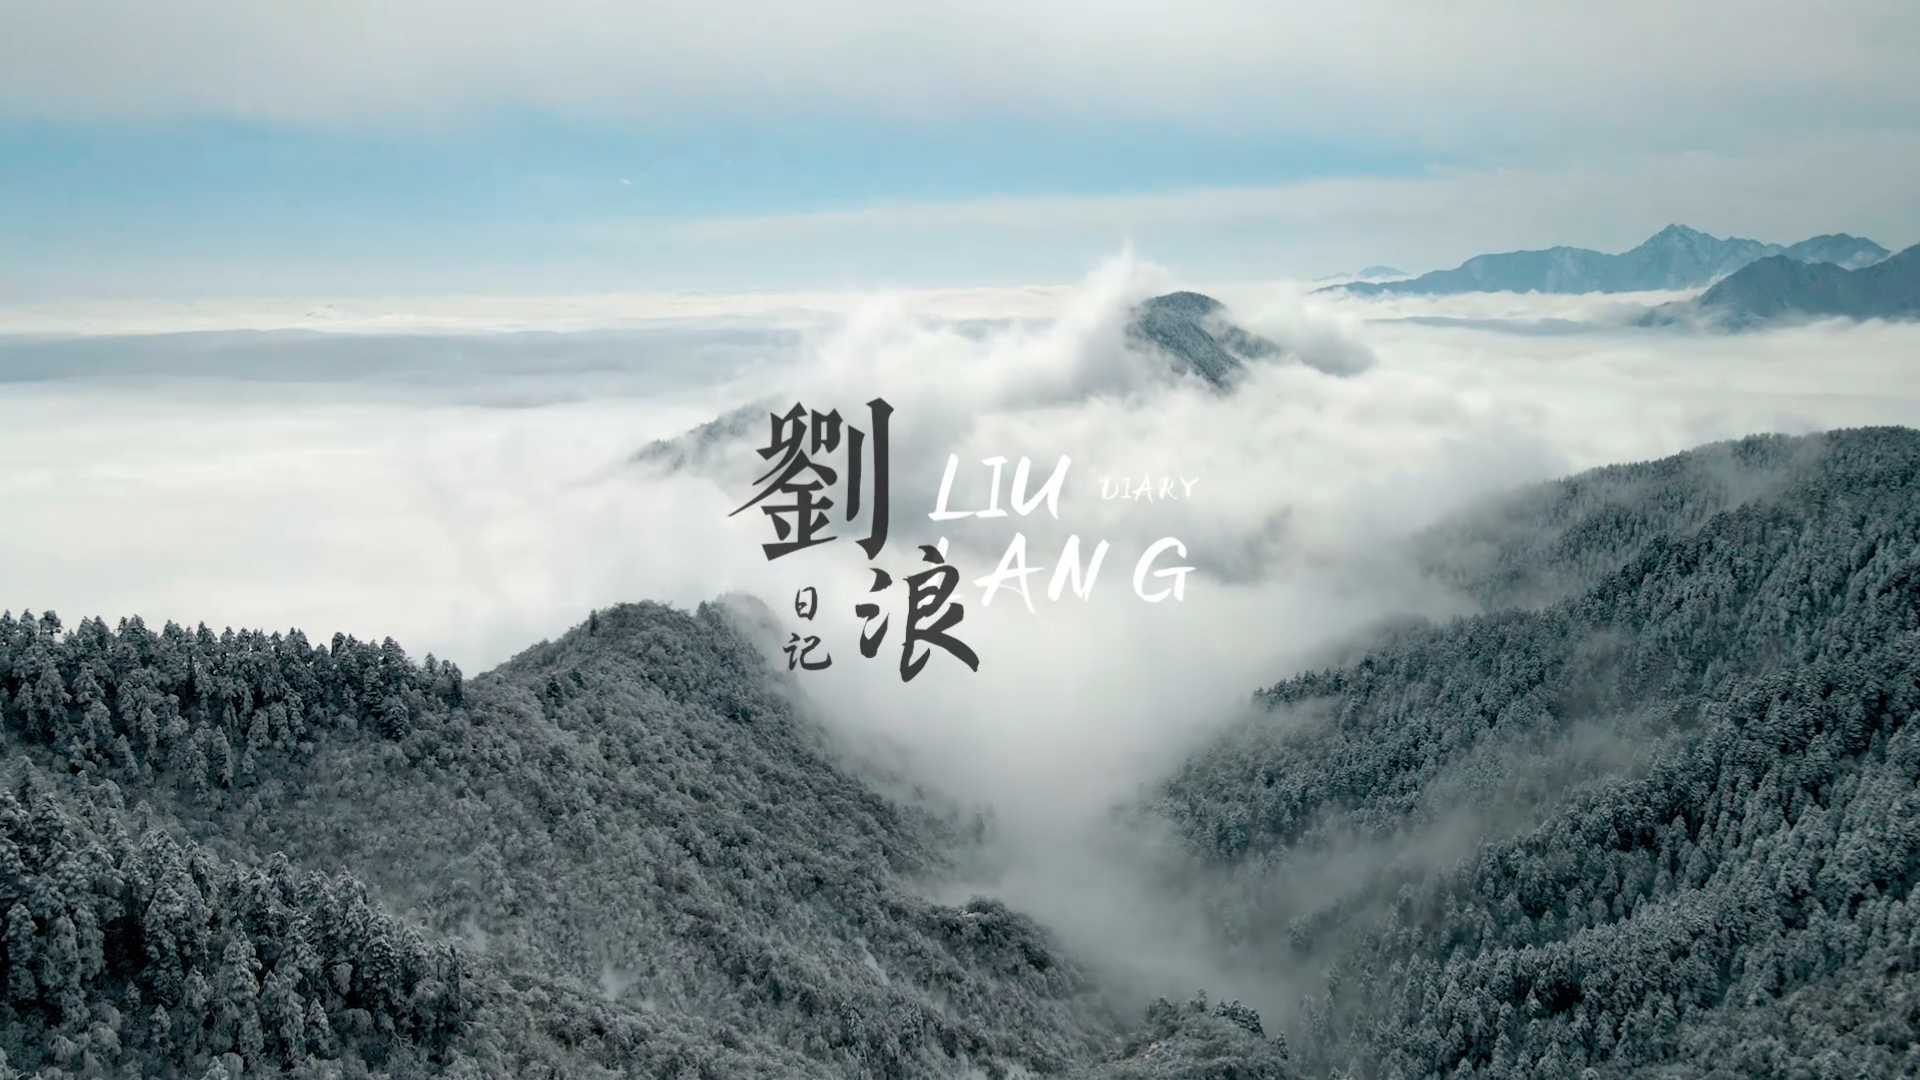 西岭雪山/刘浪日记第一期，我们的雪山之旅。